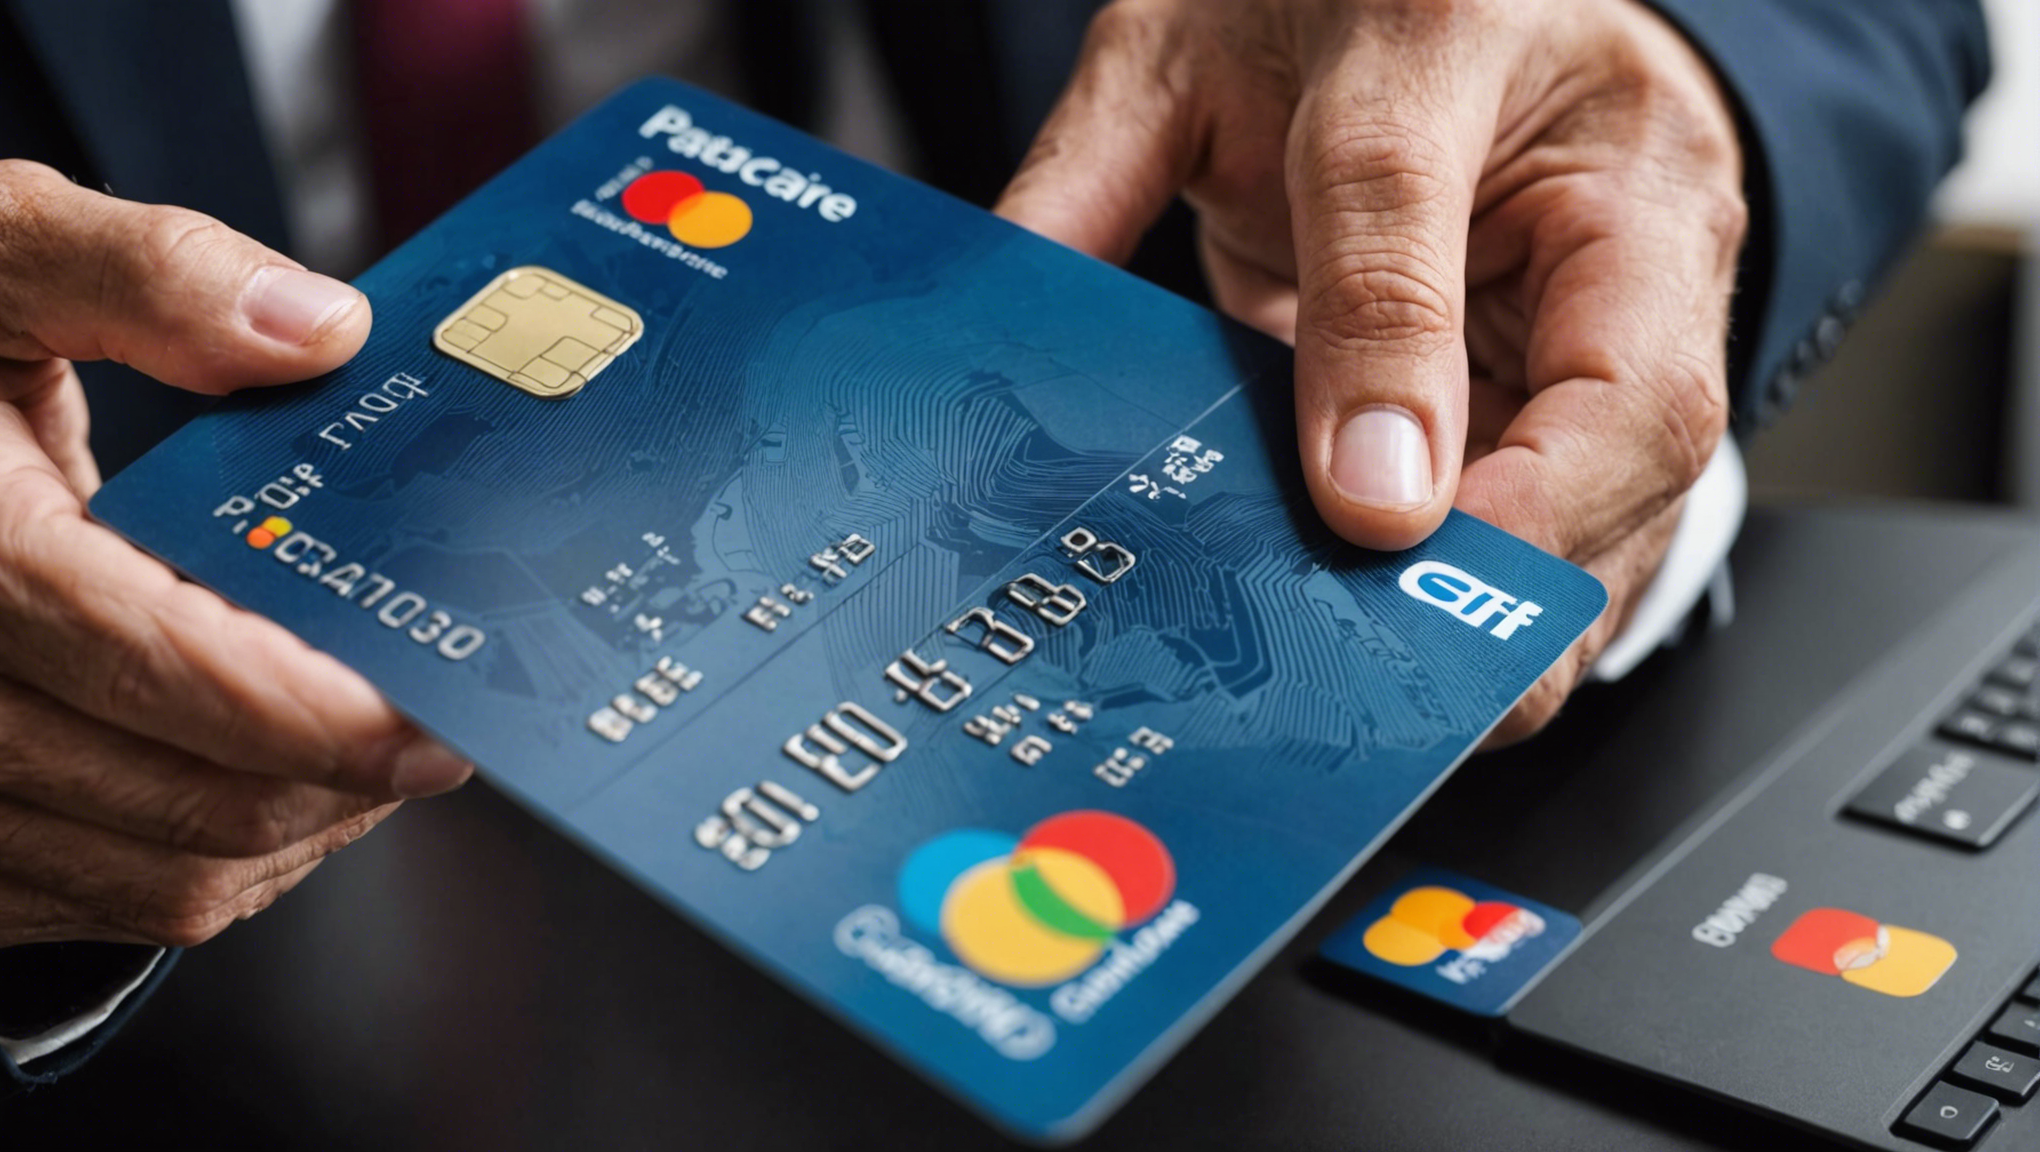 découvrez des conseils pratiques pour vous protéger efficacement contre la fraude à la carte bancaire et sécuriser vos transactions en ligne.